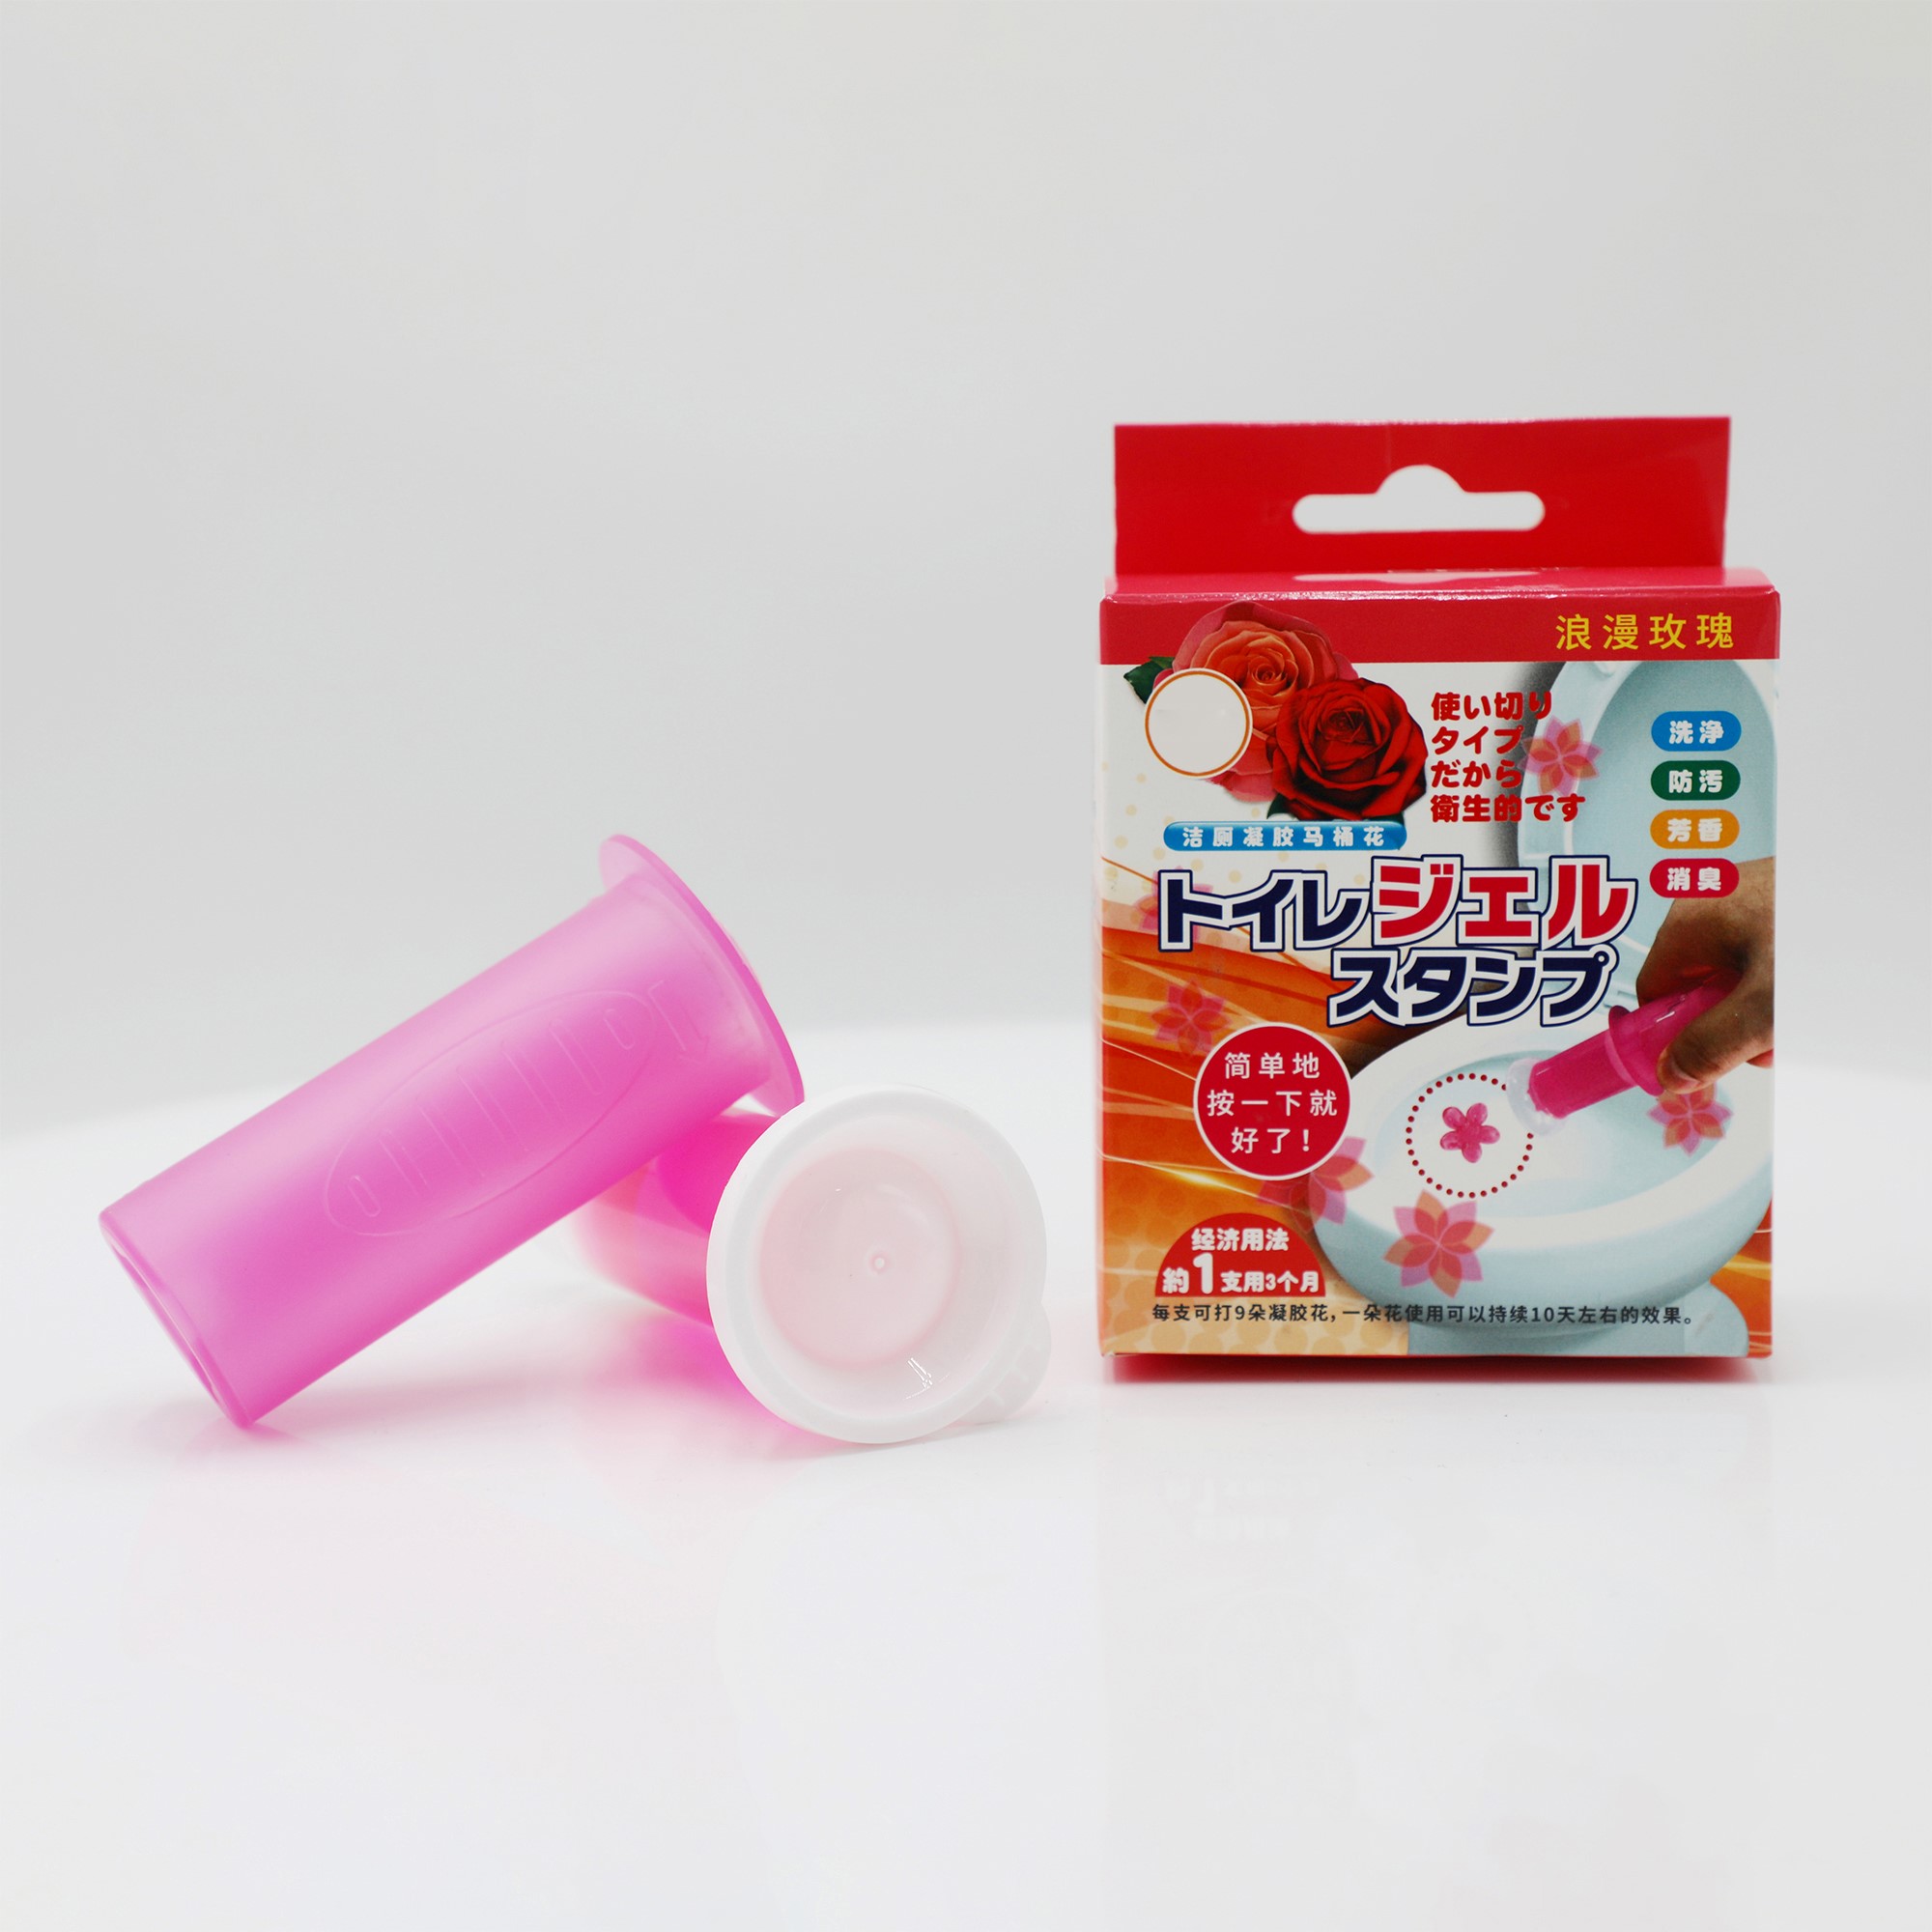 Prato de limpeza de vaso sanitário de plástico rosa - fácil e eficaz 1 * 40g